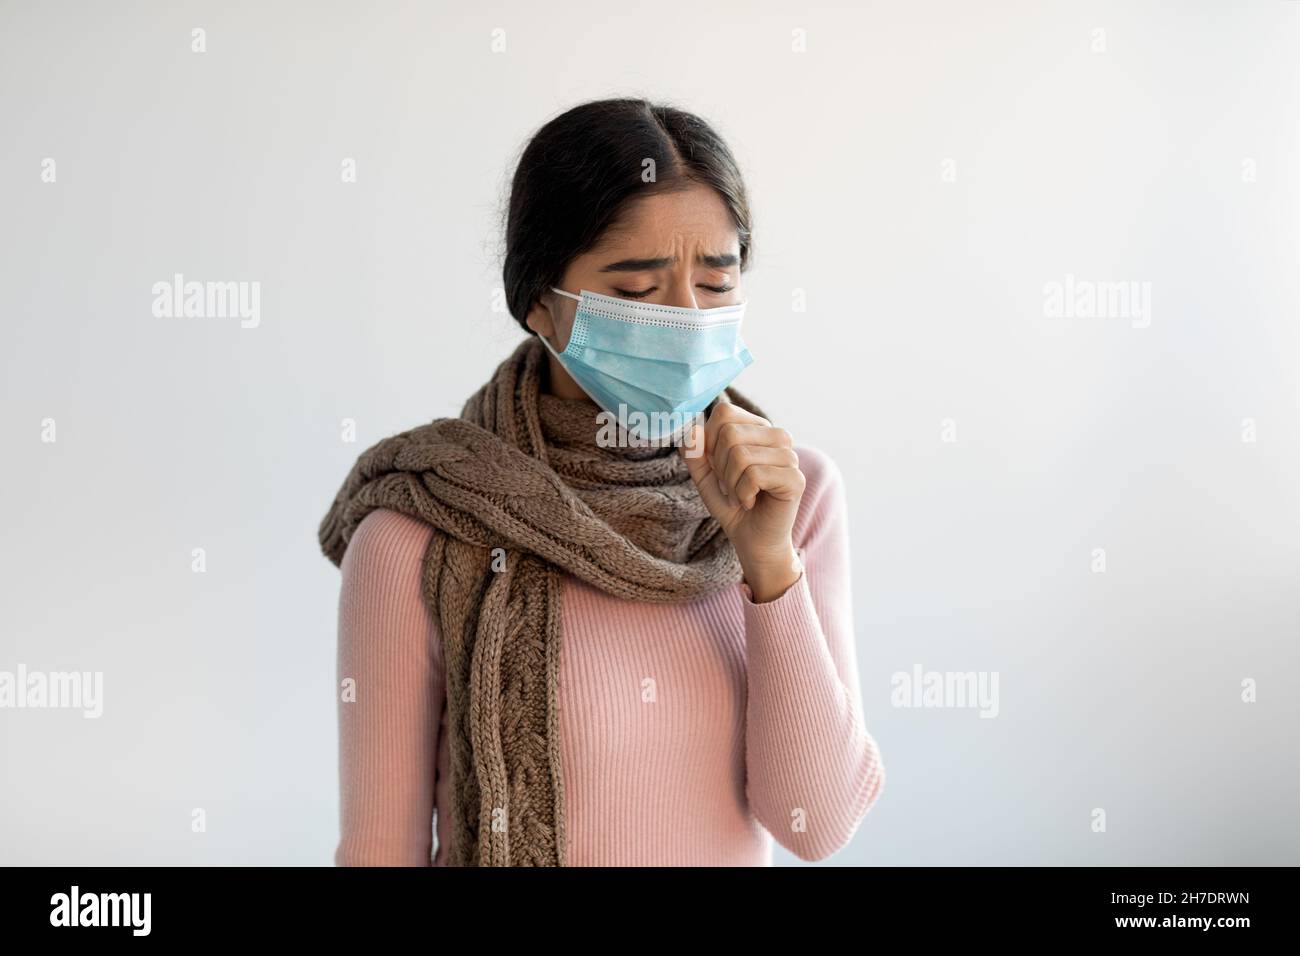 Verärgert verzweifelte junge indische Dame in Schutzmaske und Schal hustet, fühlt sich schlecht und leidet an Krankheit Stockfoto